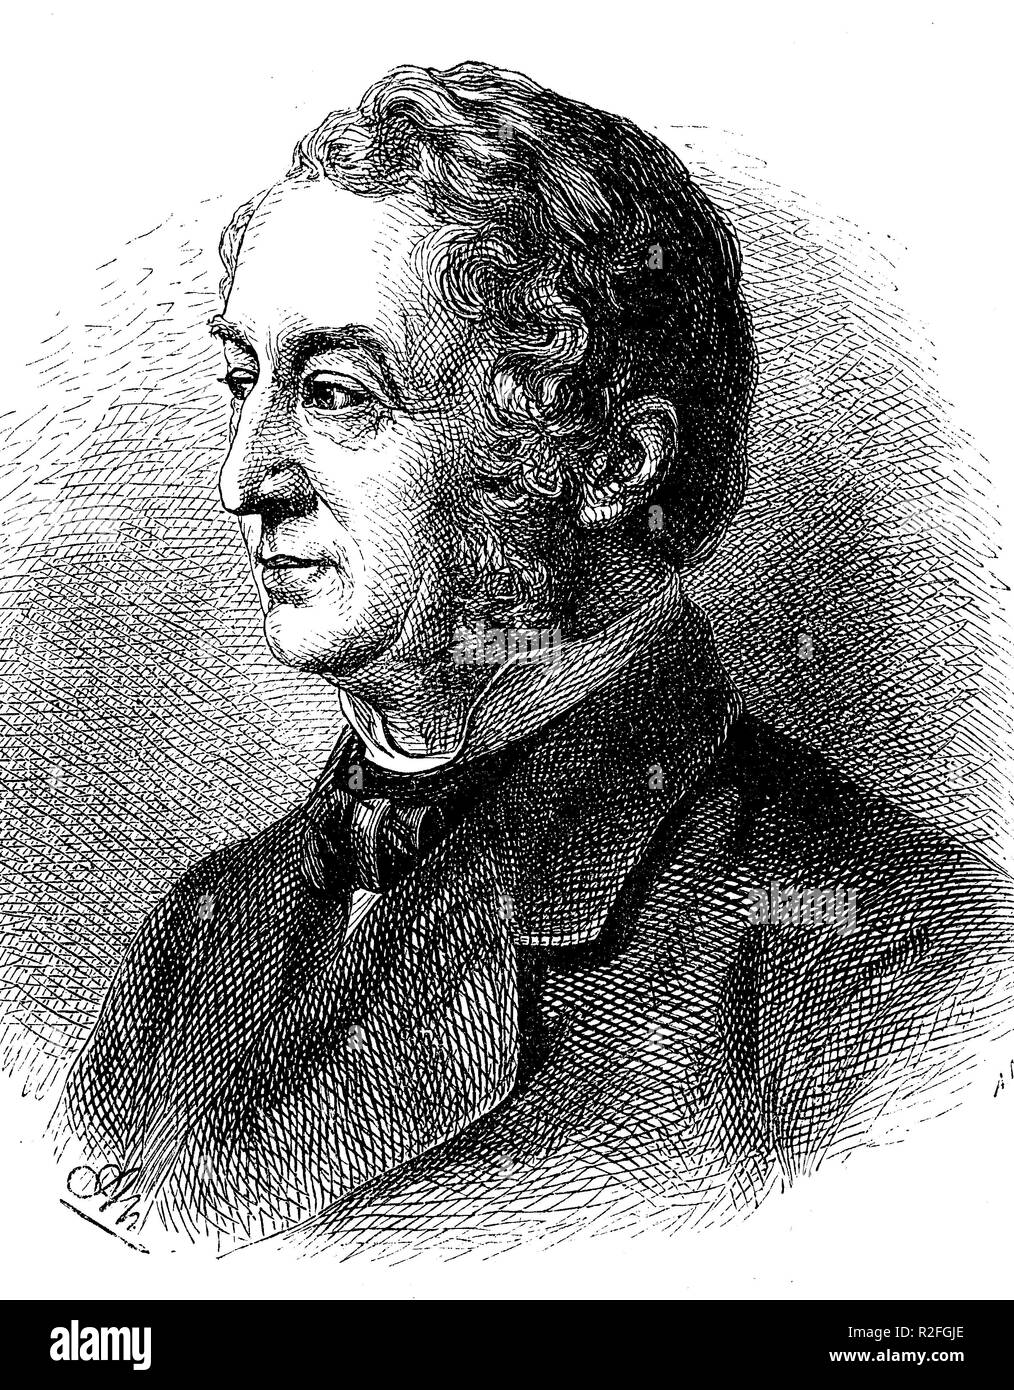 Digital verbesserte Reproduktion GÃ¼ll, Friedrich Wilhelm, 1812-1879, deutscher Dichter, von einer ursprünglichen Drucken aus dem 19. Jahrhundert Stockfoto